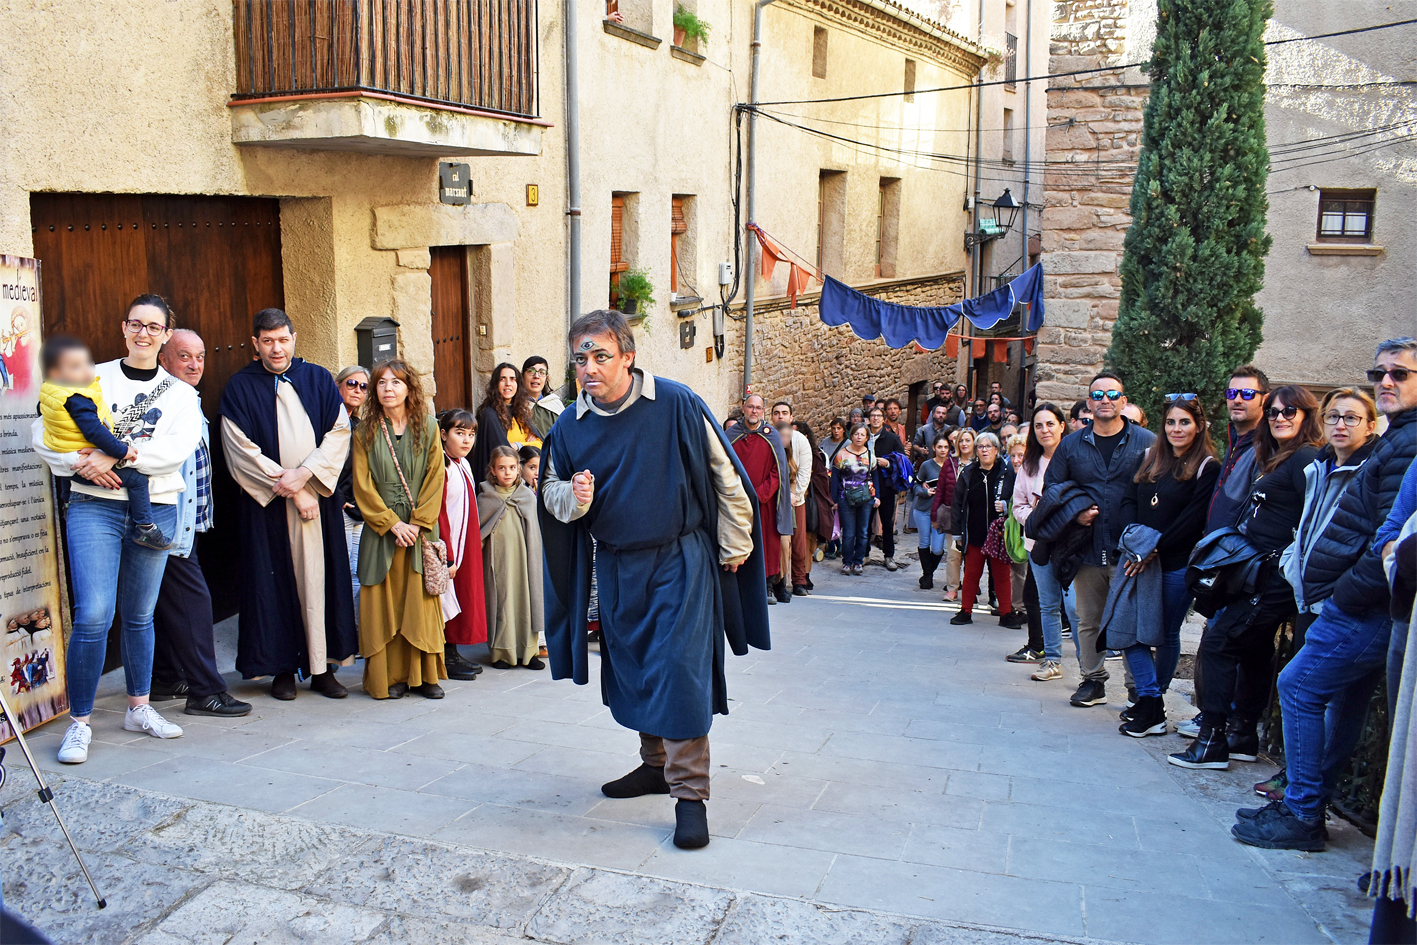 Personatge del seguici de la Castlana al carrer Major, durant la 20a Fira Medieval d'Oficis de Súria.